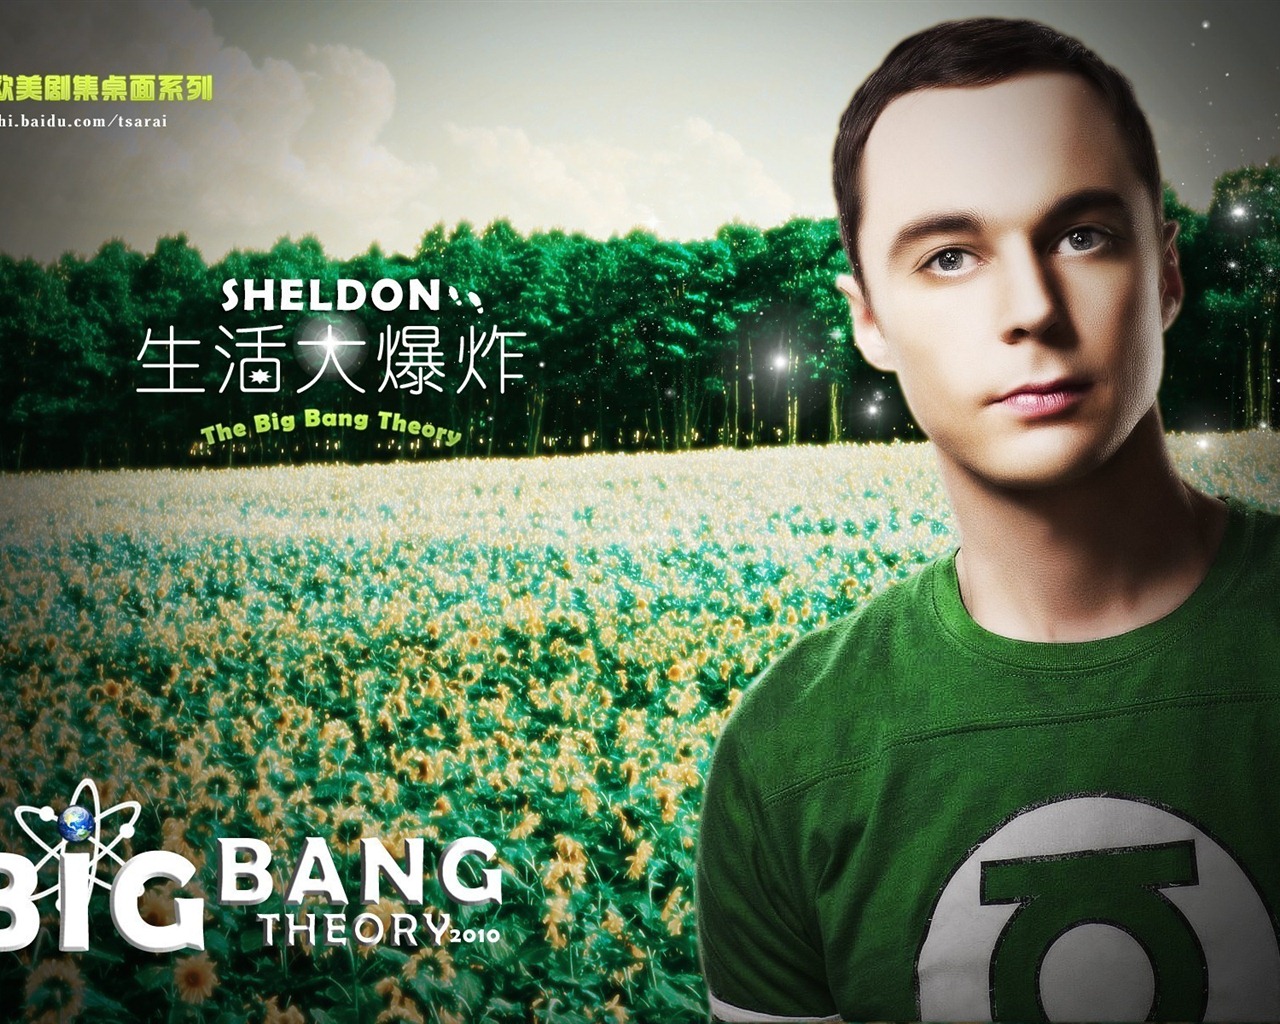 The Big Bang Theory 生活大爆炸 电视剧高清壁纸16 - 1280x1024